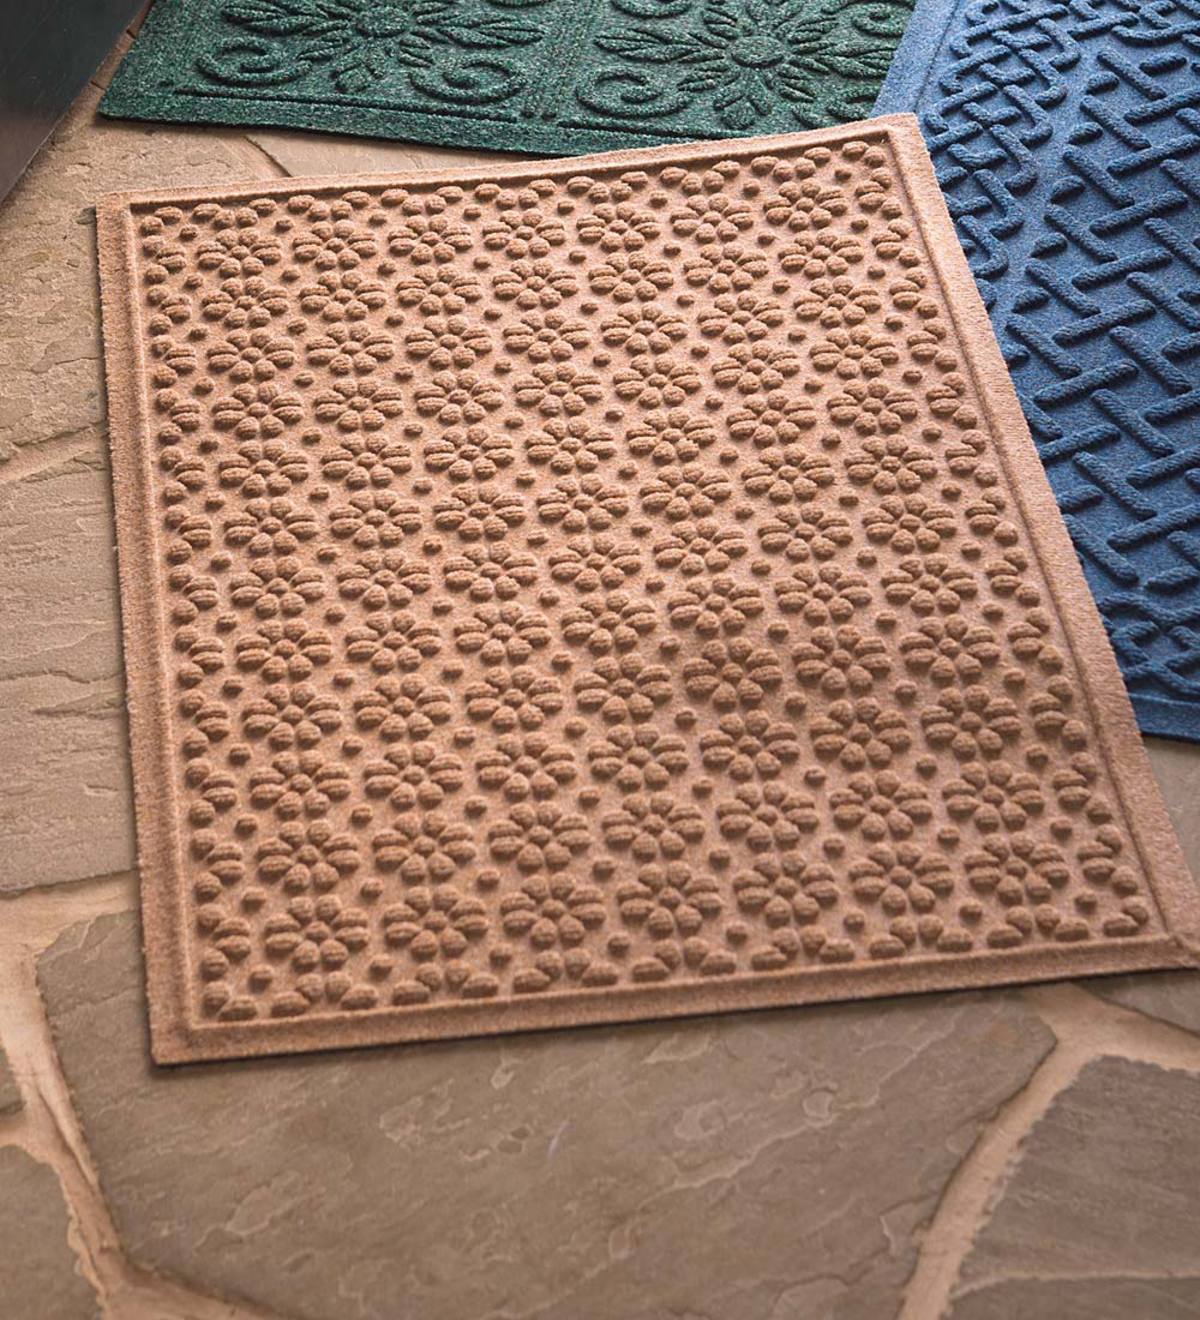 Oversized Daisy Waterhog Doormat, 3' x 5'